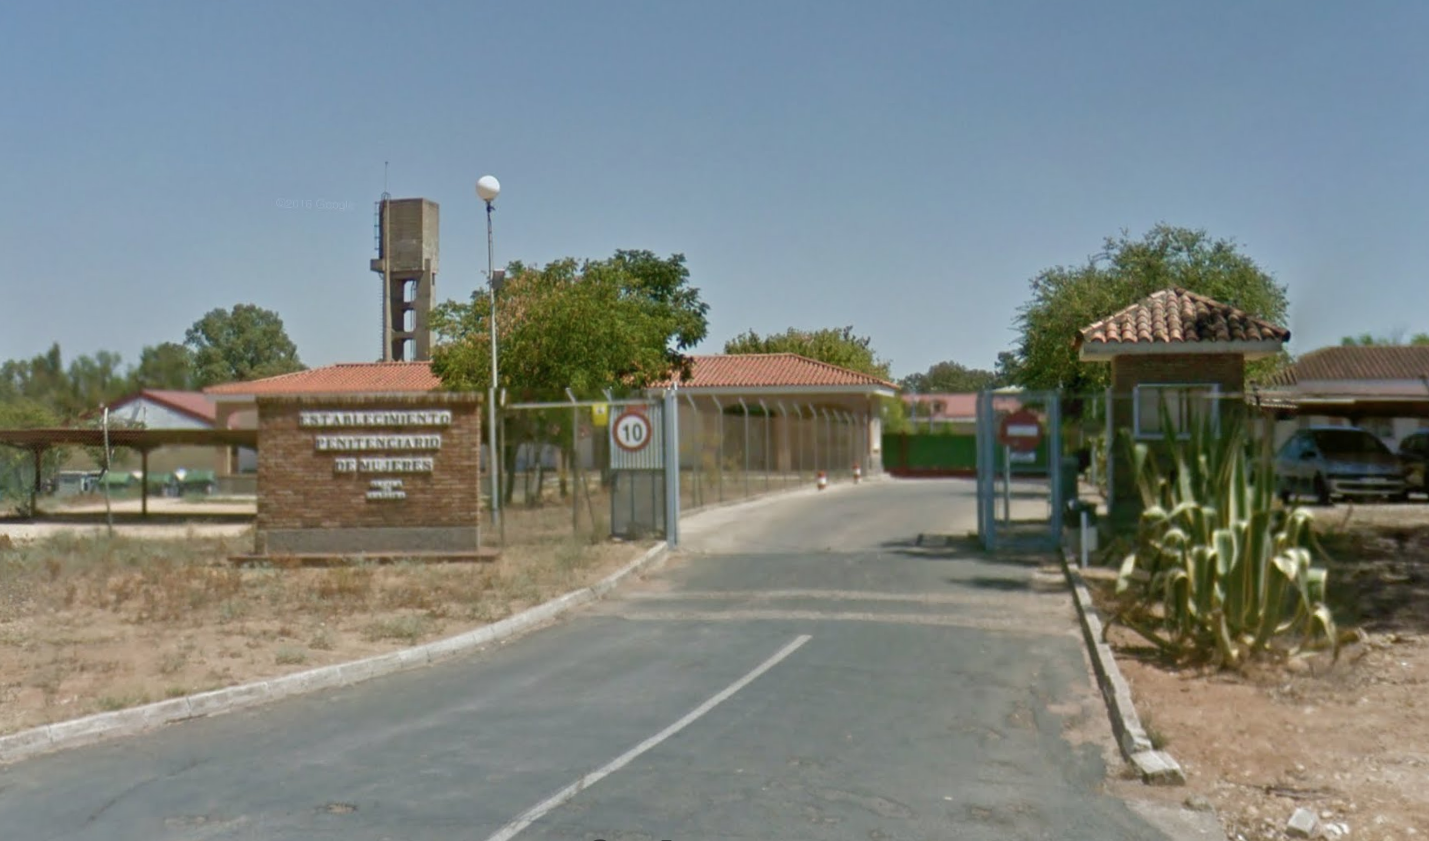 La cárcel de mujeres de Alcalá de Guadaíra, en una imagen de Google Maps.